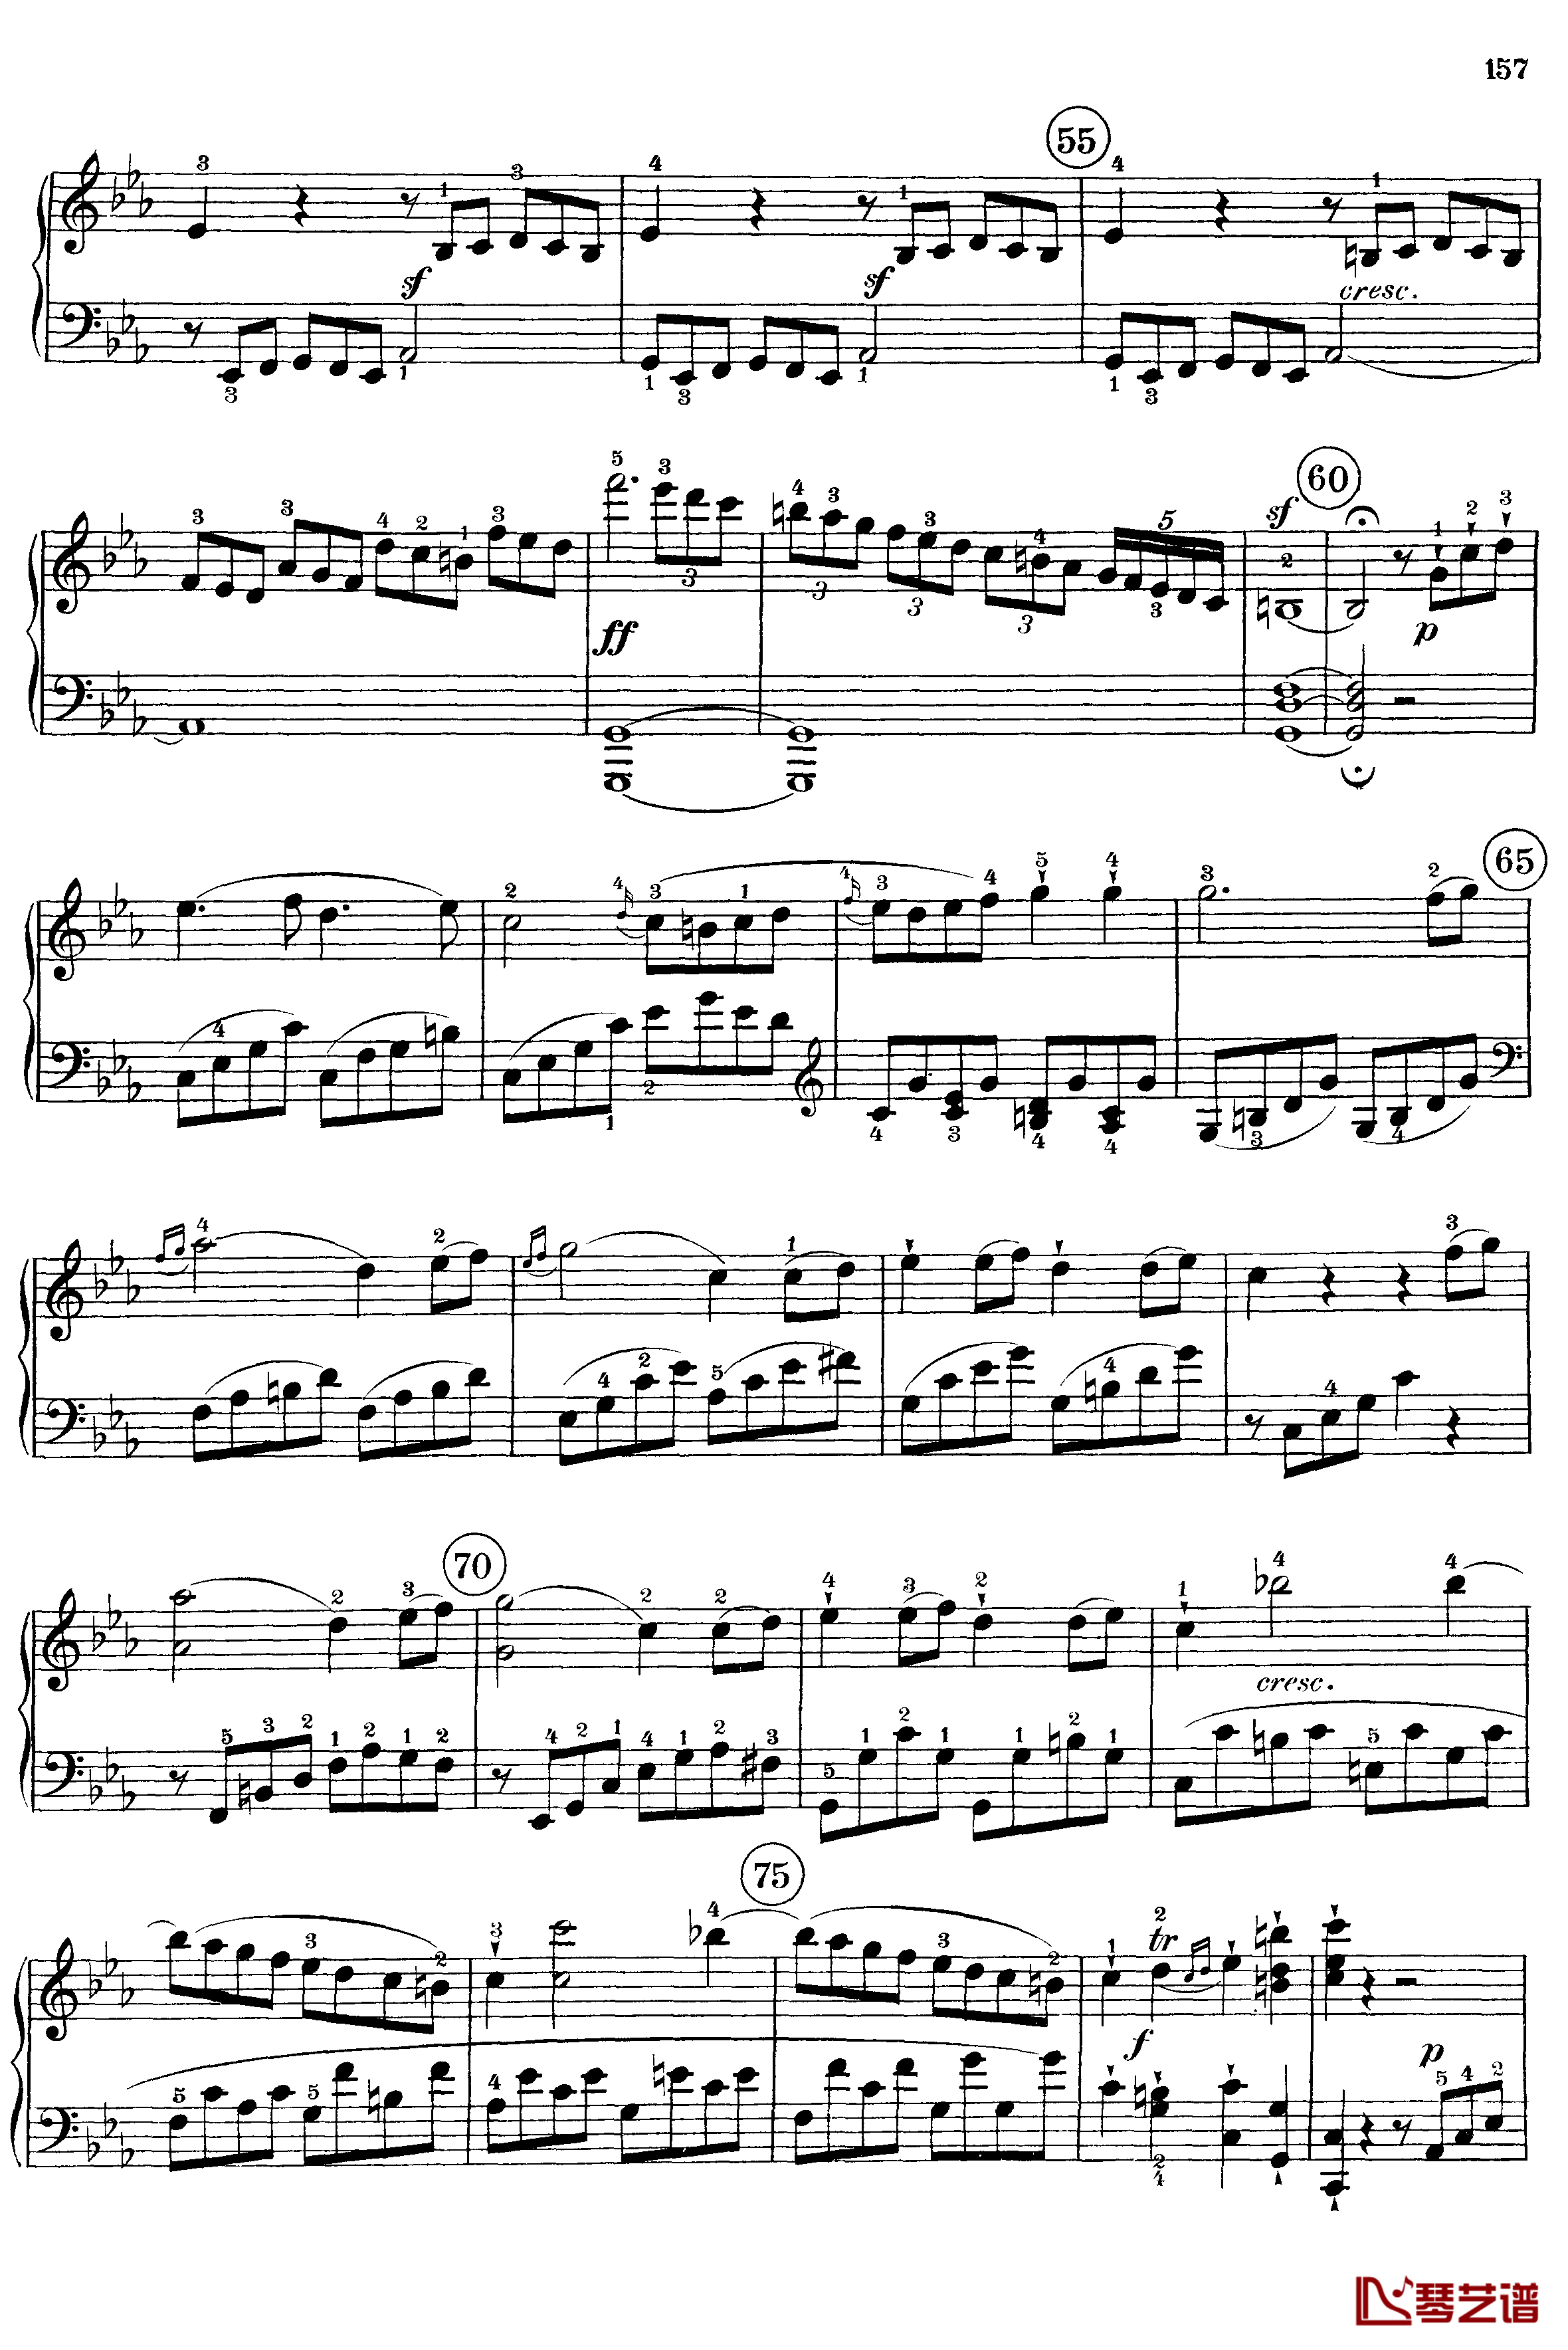 悲怆钢琴谱-c小调第八号钢琴奏鸣曲-全乐章-带指法版-贝多芬-beethoven15